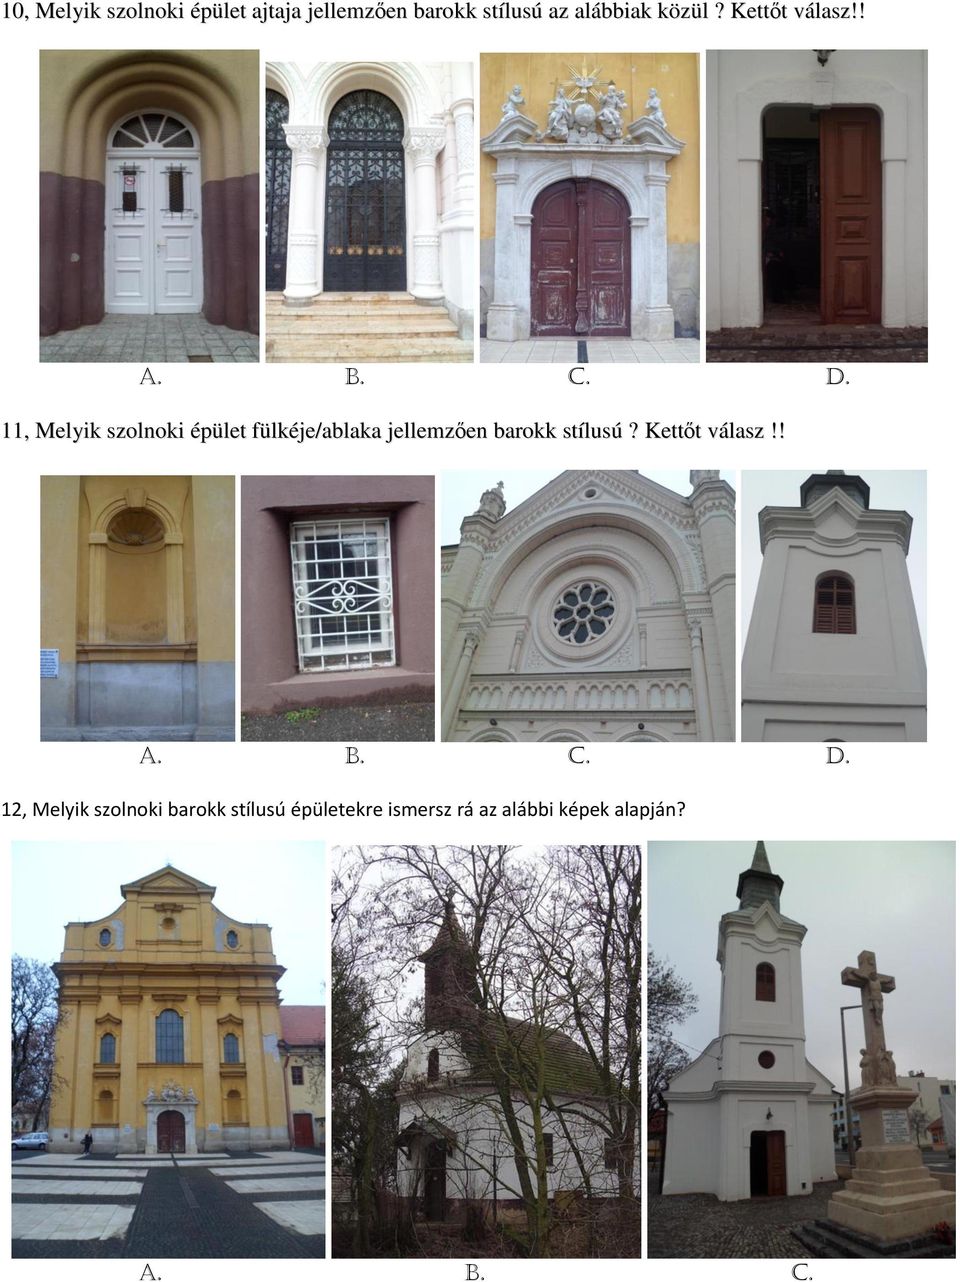 11, Melyik szolnoki épület fülkéje/ablaka jellemzően barokk stílusú?